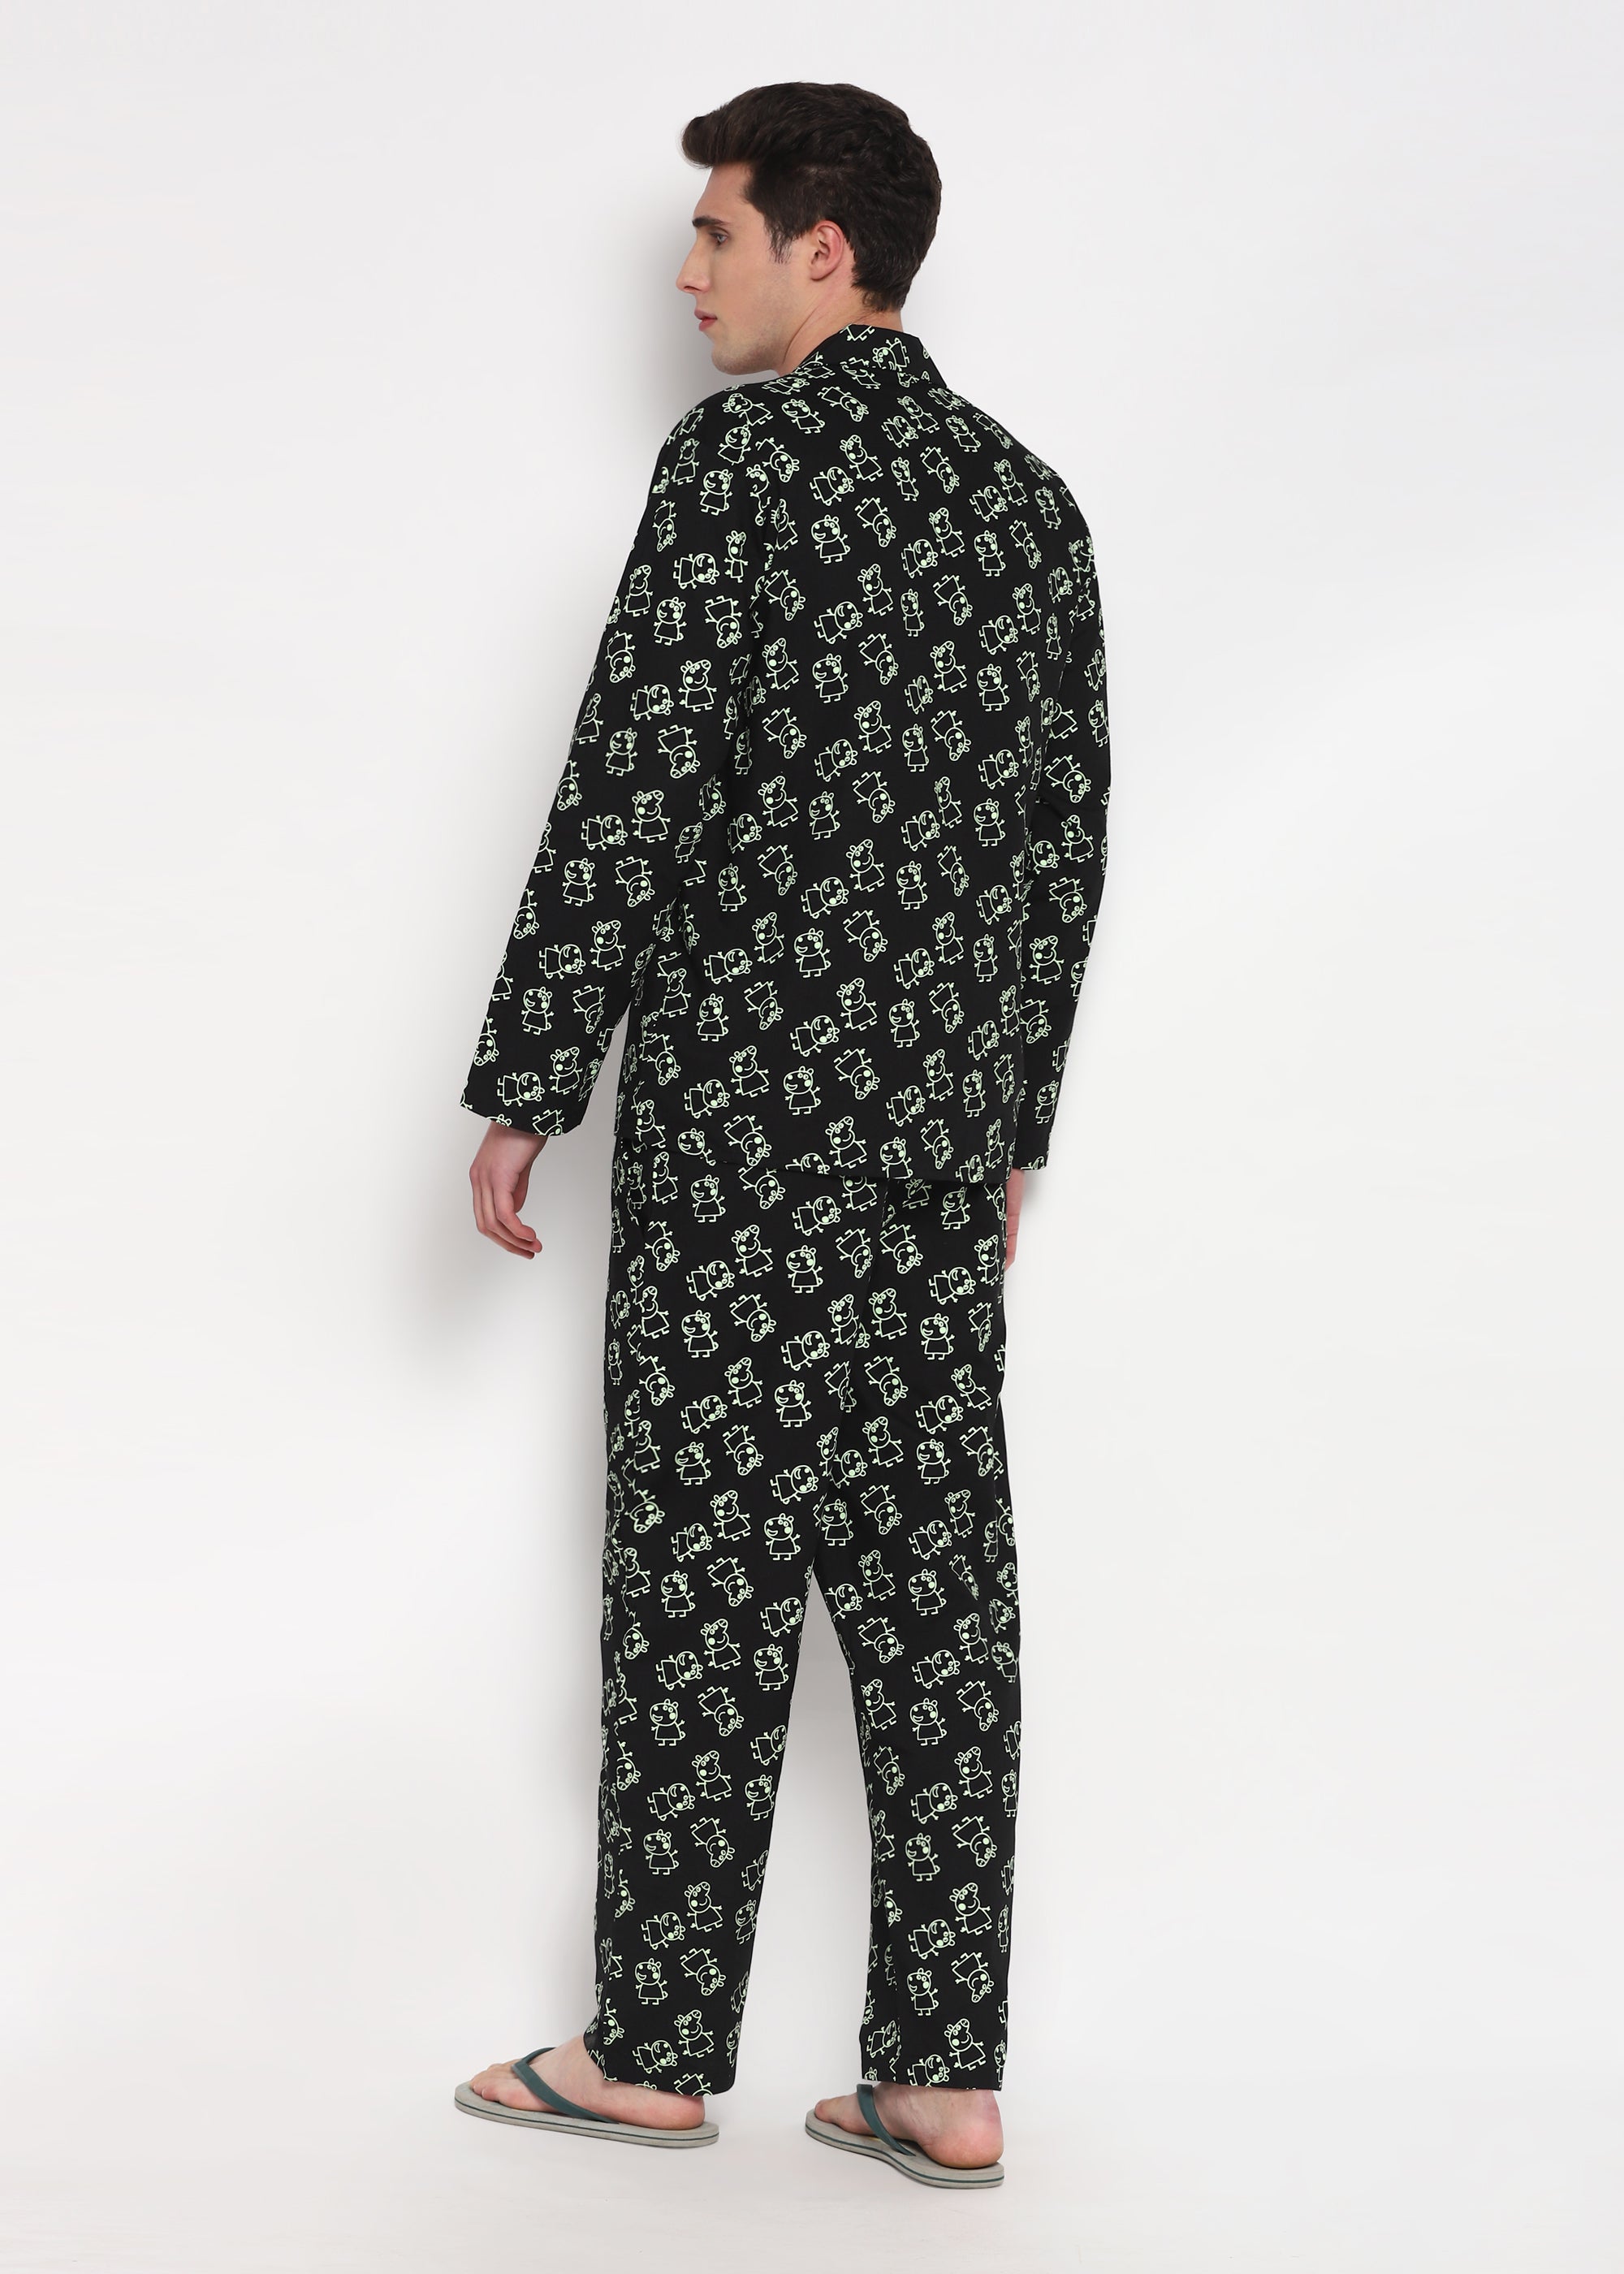 Glow in the Dark Peppa Print Long Sleeve Men's Night Suit - Shopbloom